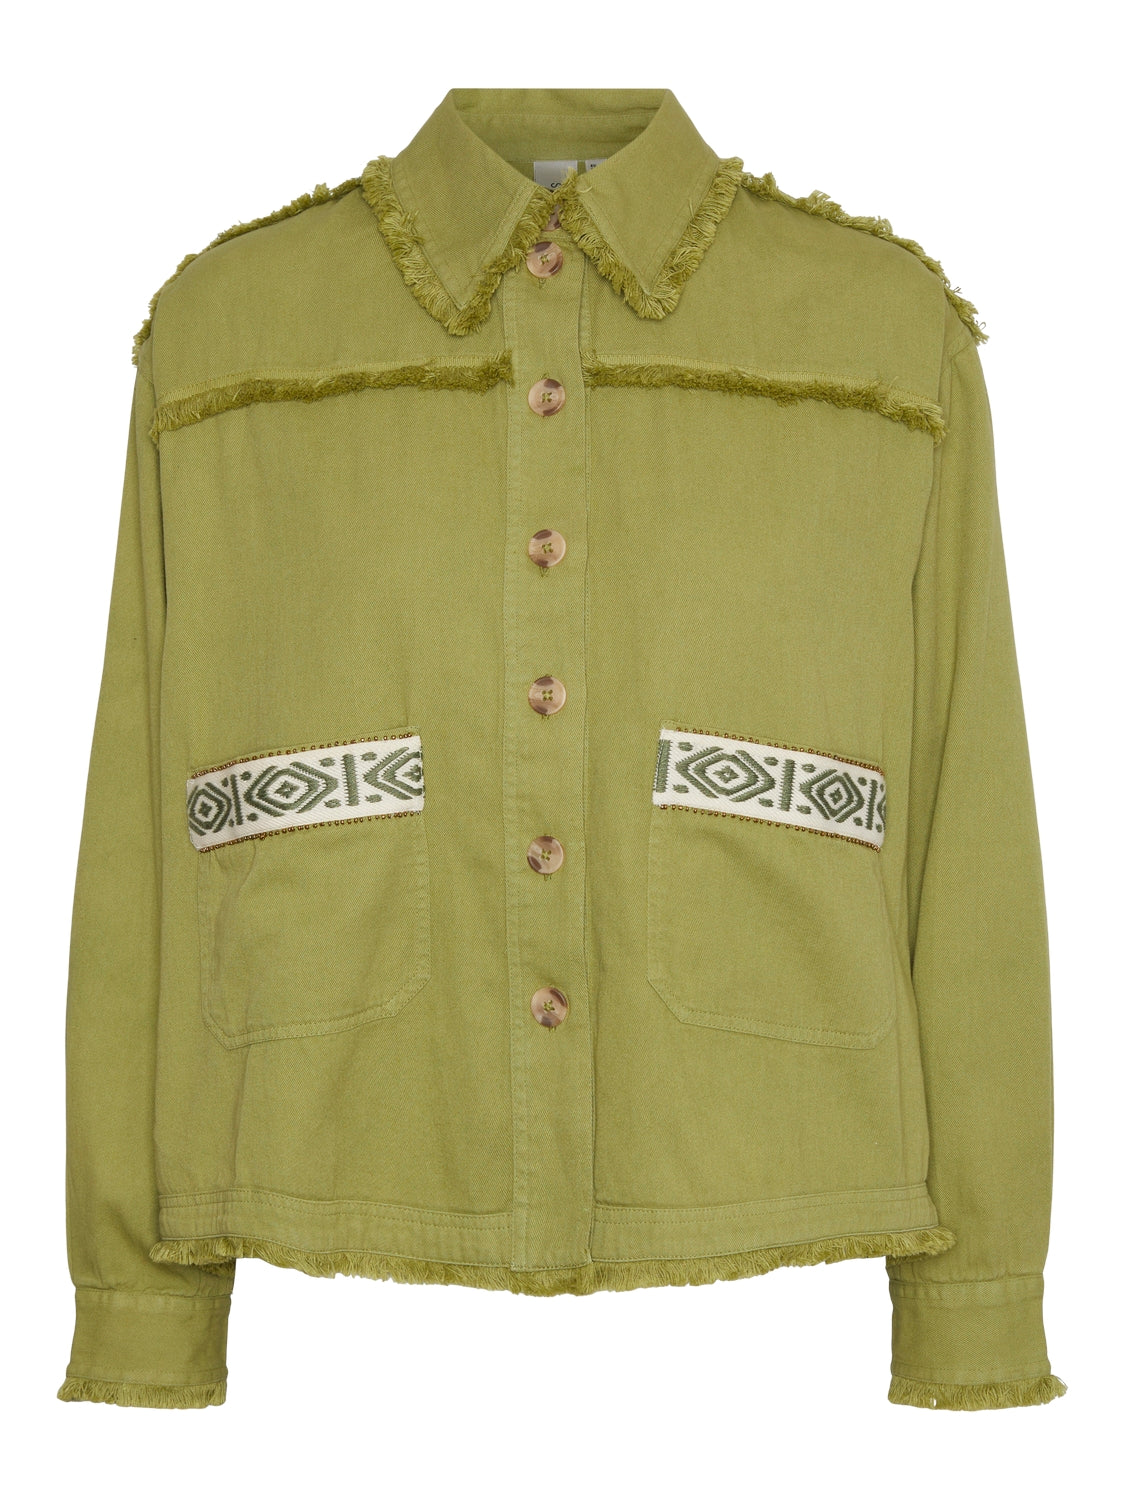 YAS "Tokka" Embroidery Jacket